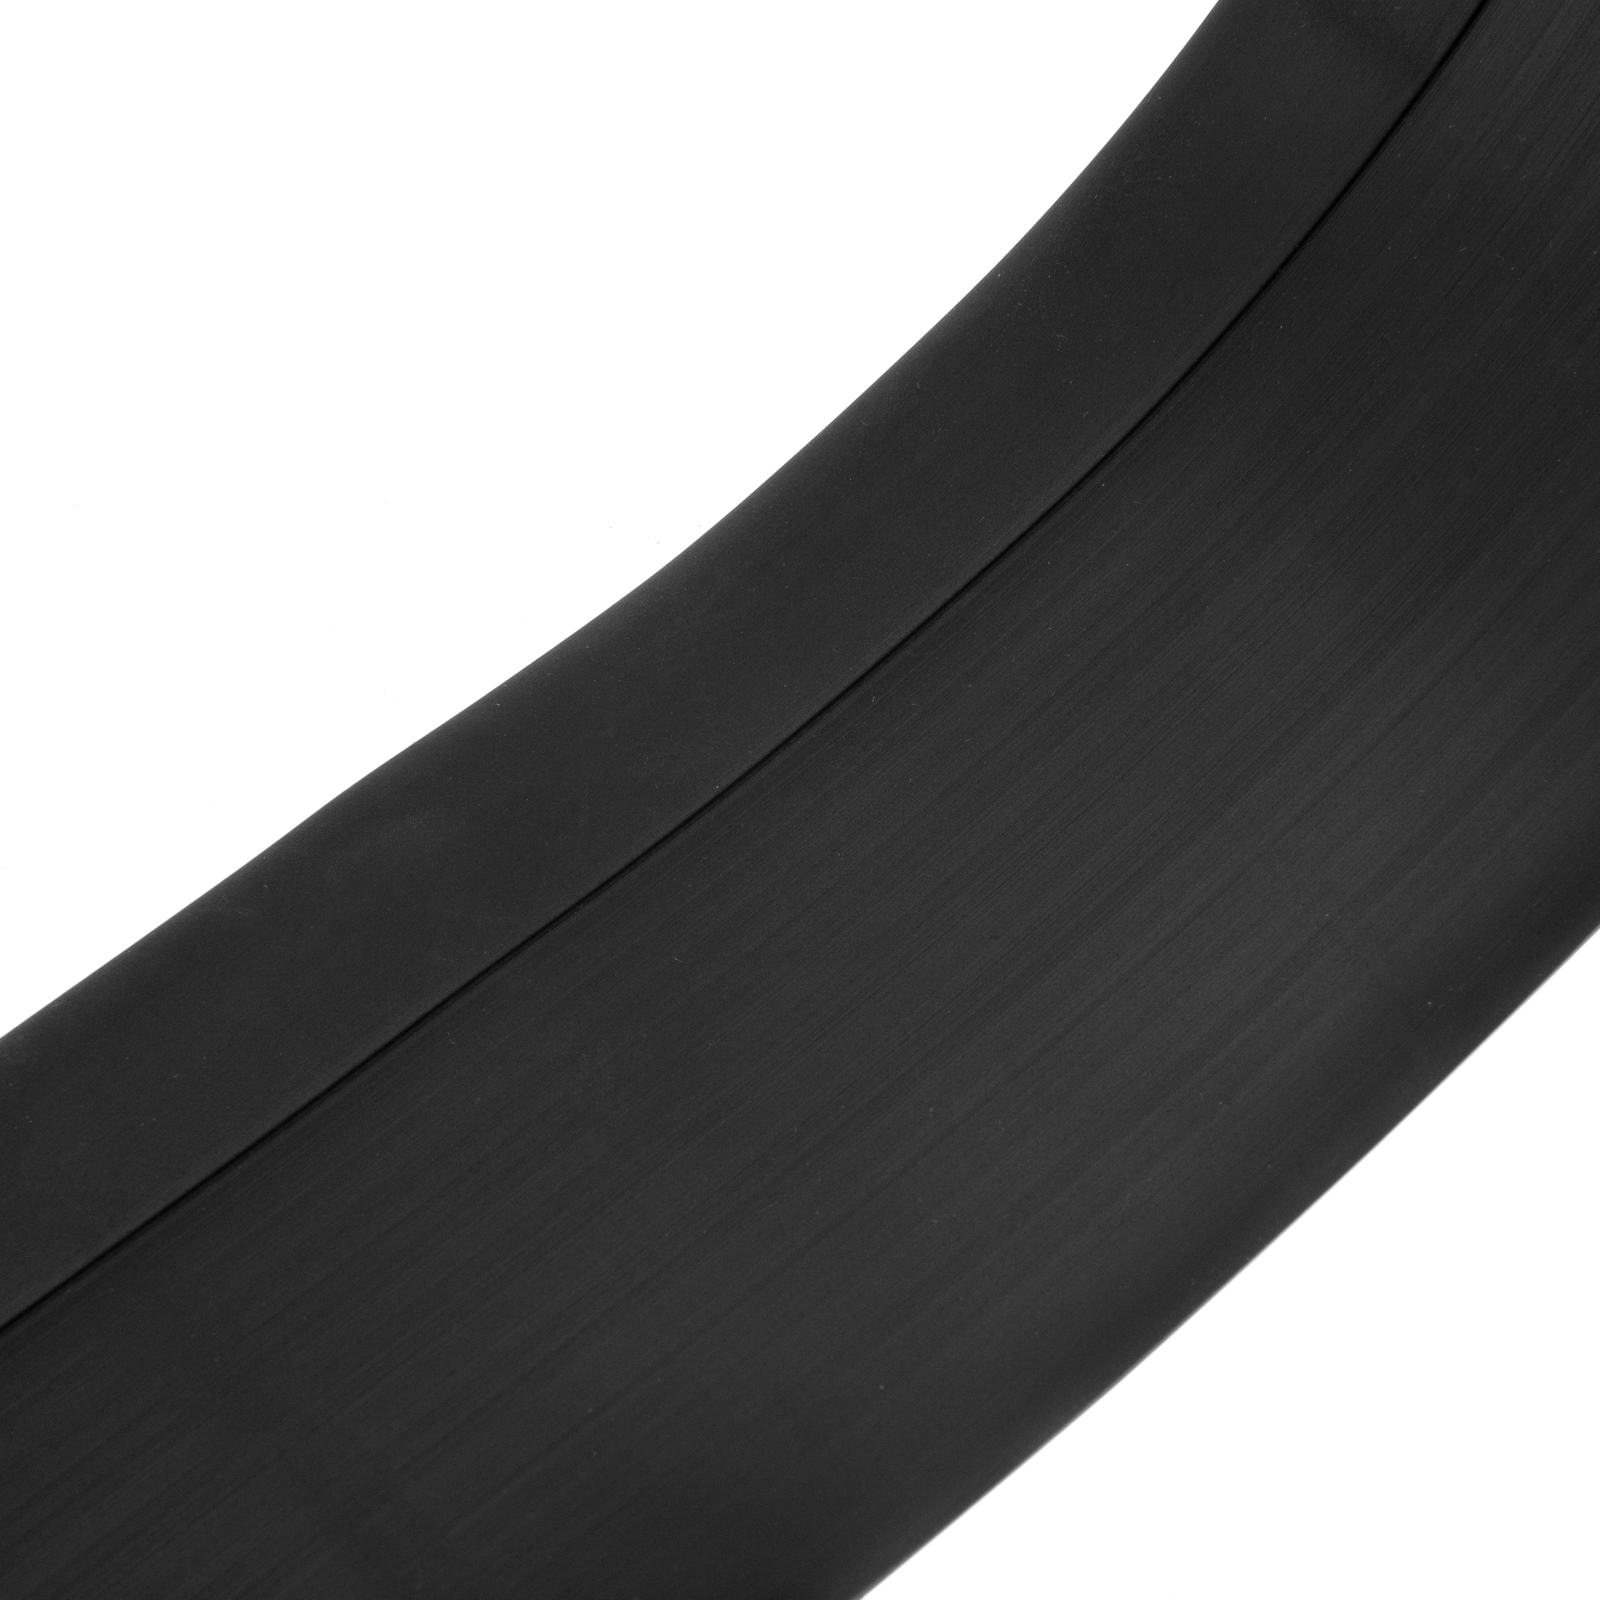 Plinthe flexible autocollante 70 x 20 mm. Longueur 20 m gris